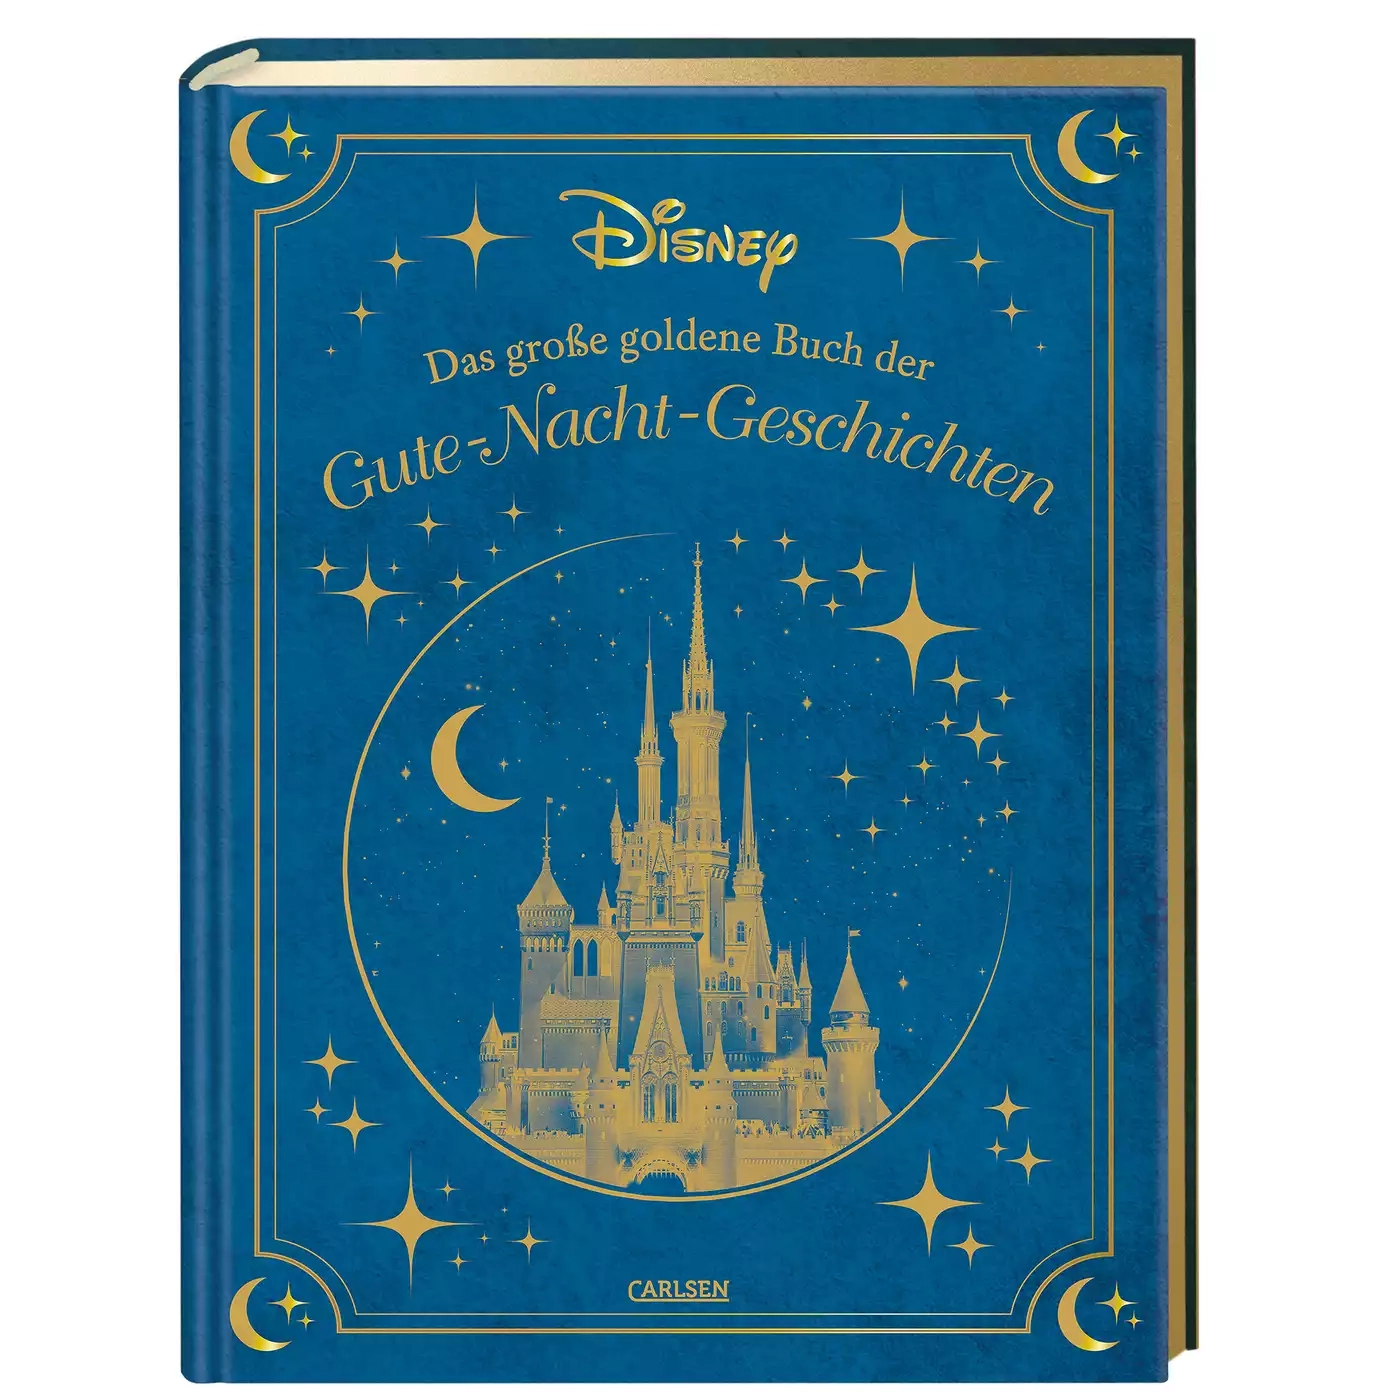 Disney: Das große goldene Buch der Gute-Nacht-Geschichten CARLSEN Blau 2000582216309 1